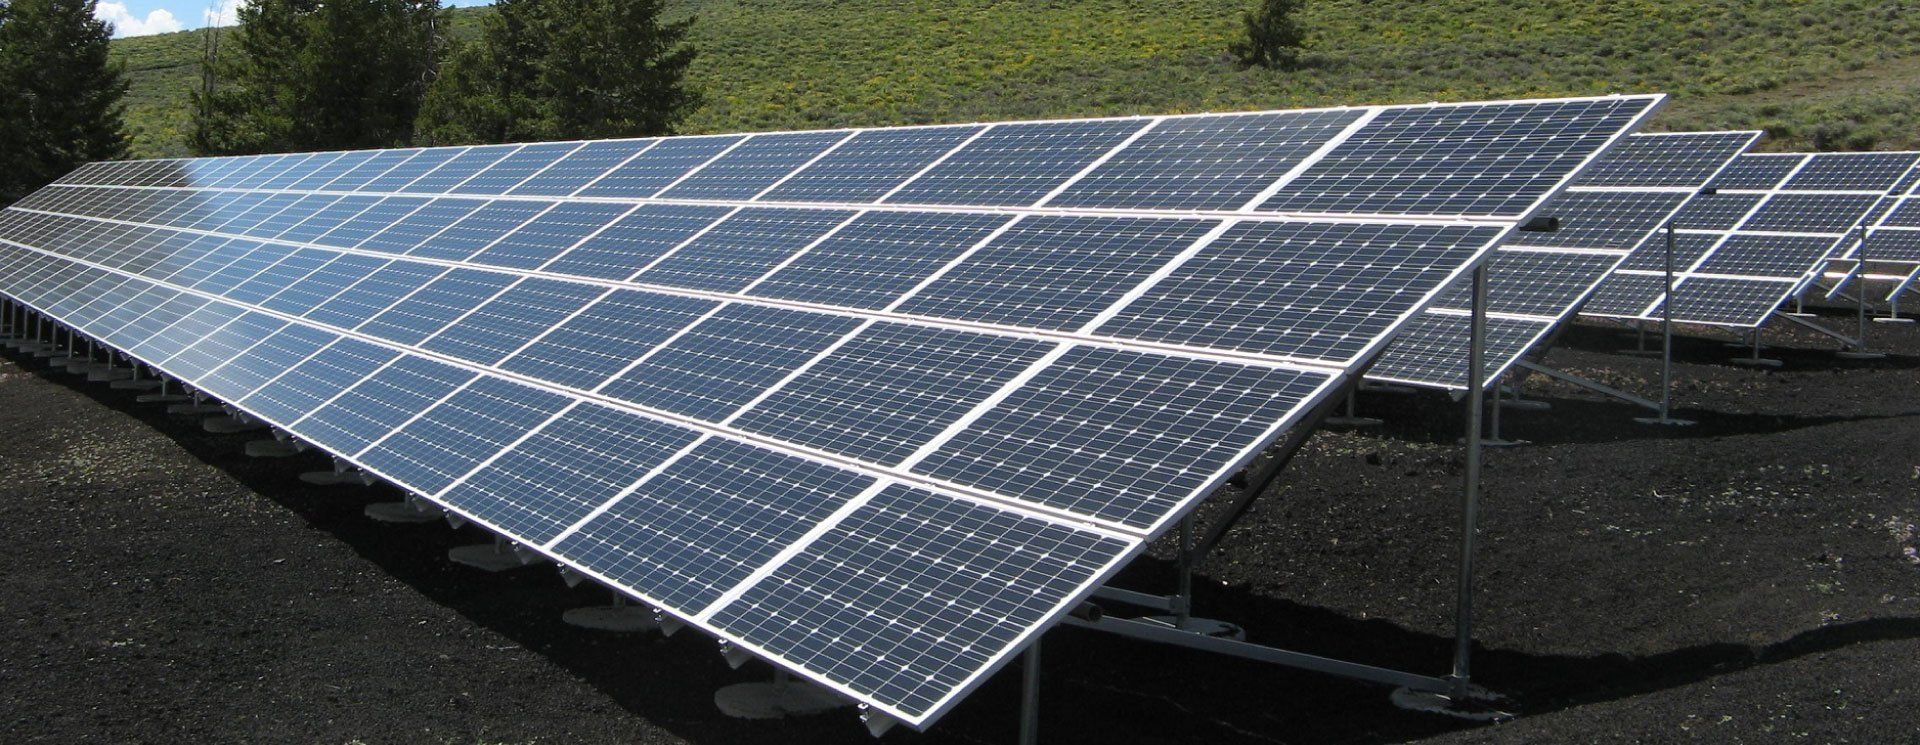 Exemplo de complexo de geração de energia solar, que pode usufruir da tecnologia para otimizar a gestão de perdas compartilhadas e liquidação de energia